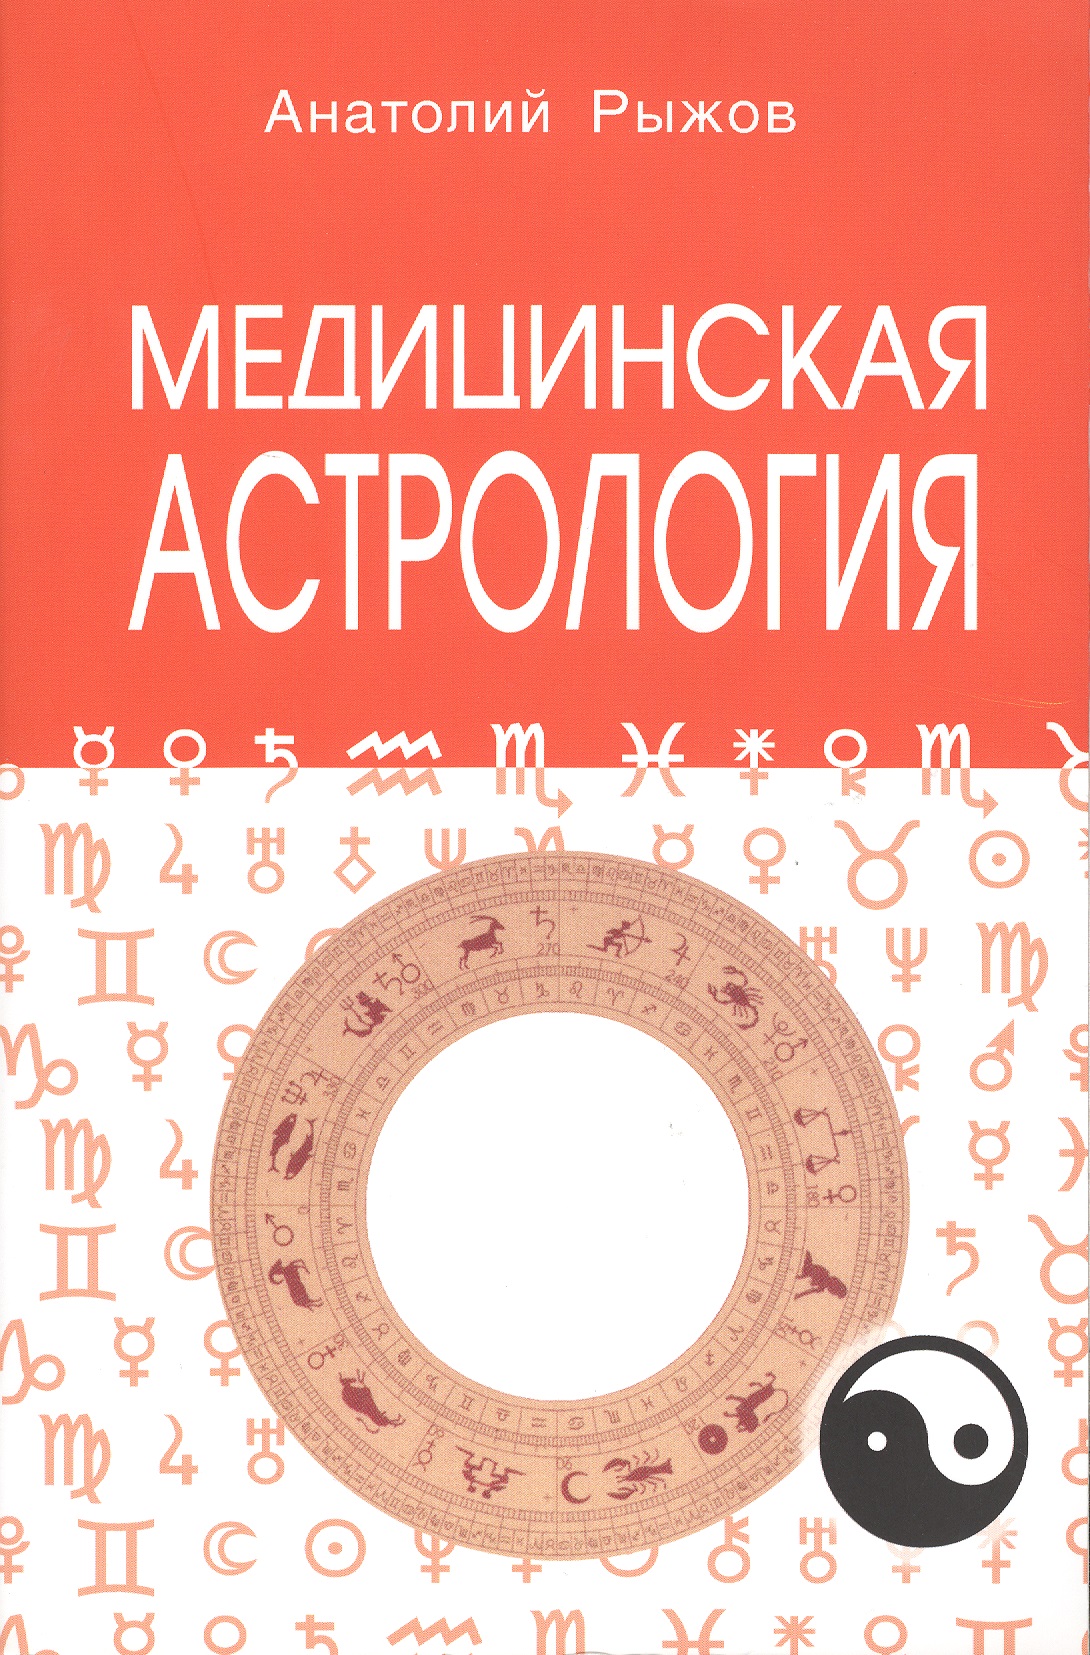 Рыжов Анатолий Николаевич - Медицинская астрология 4-е изд.